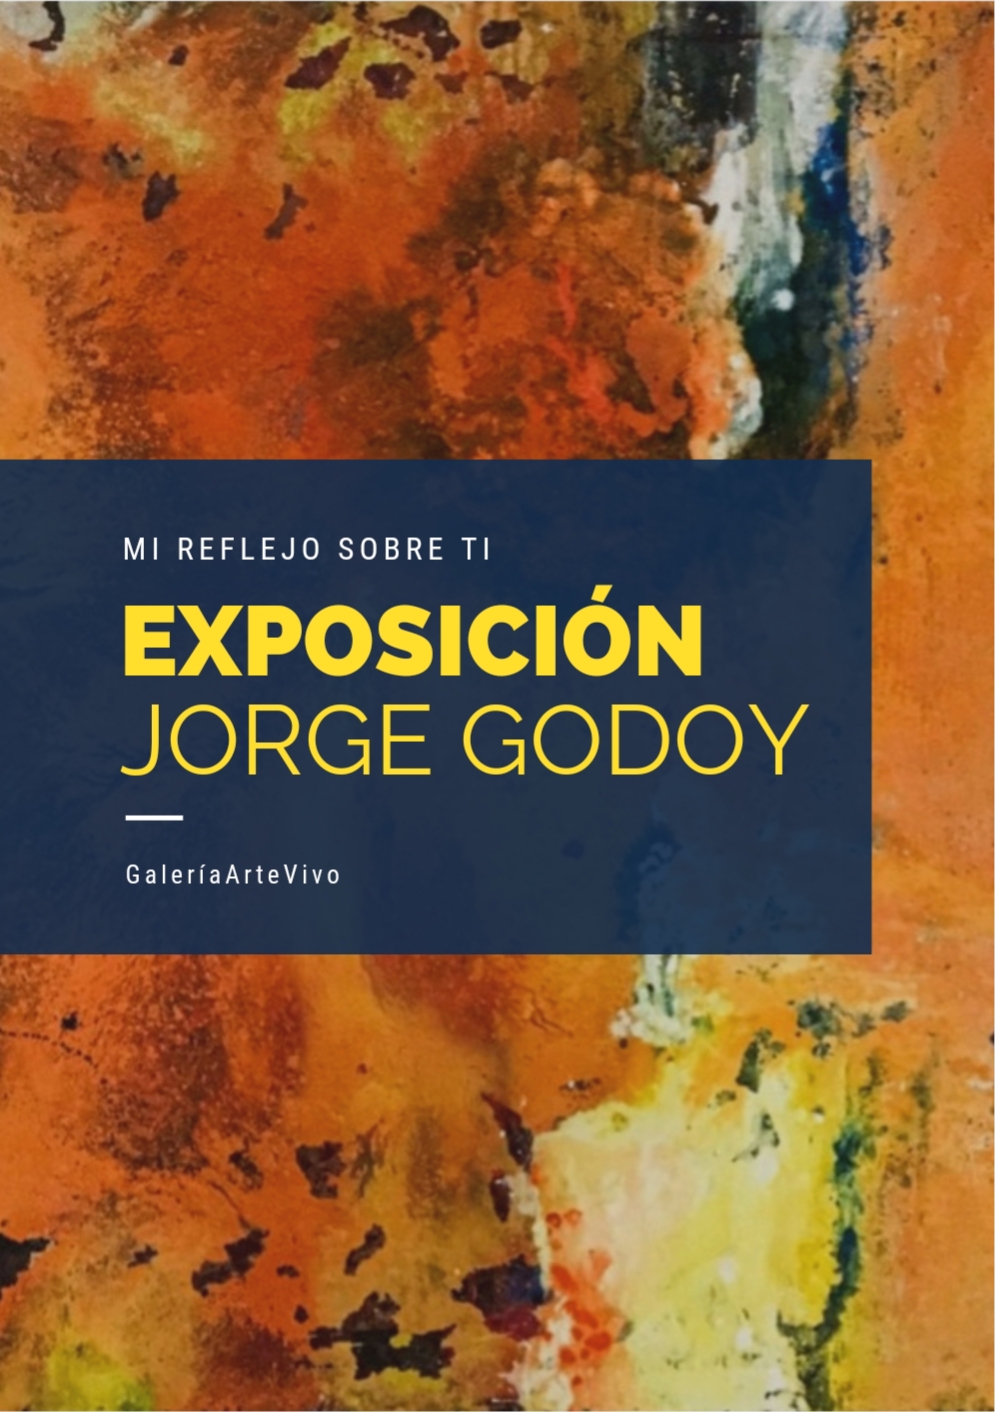 MI reflejo sobre ti, Nueva Exposición de Jorge Godoy